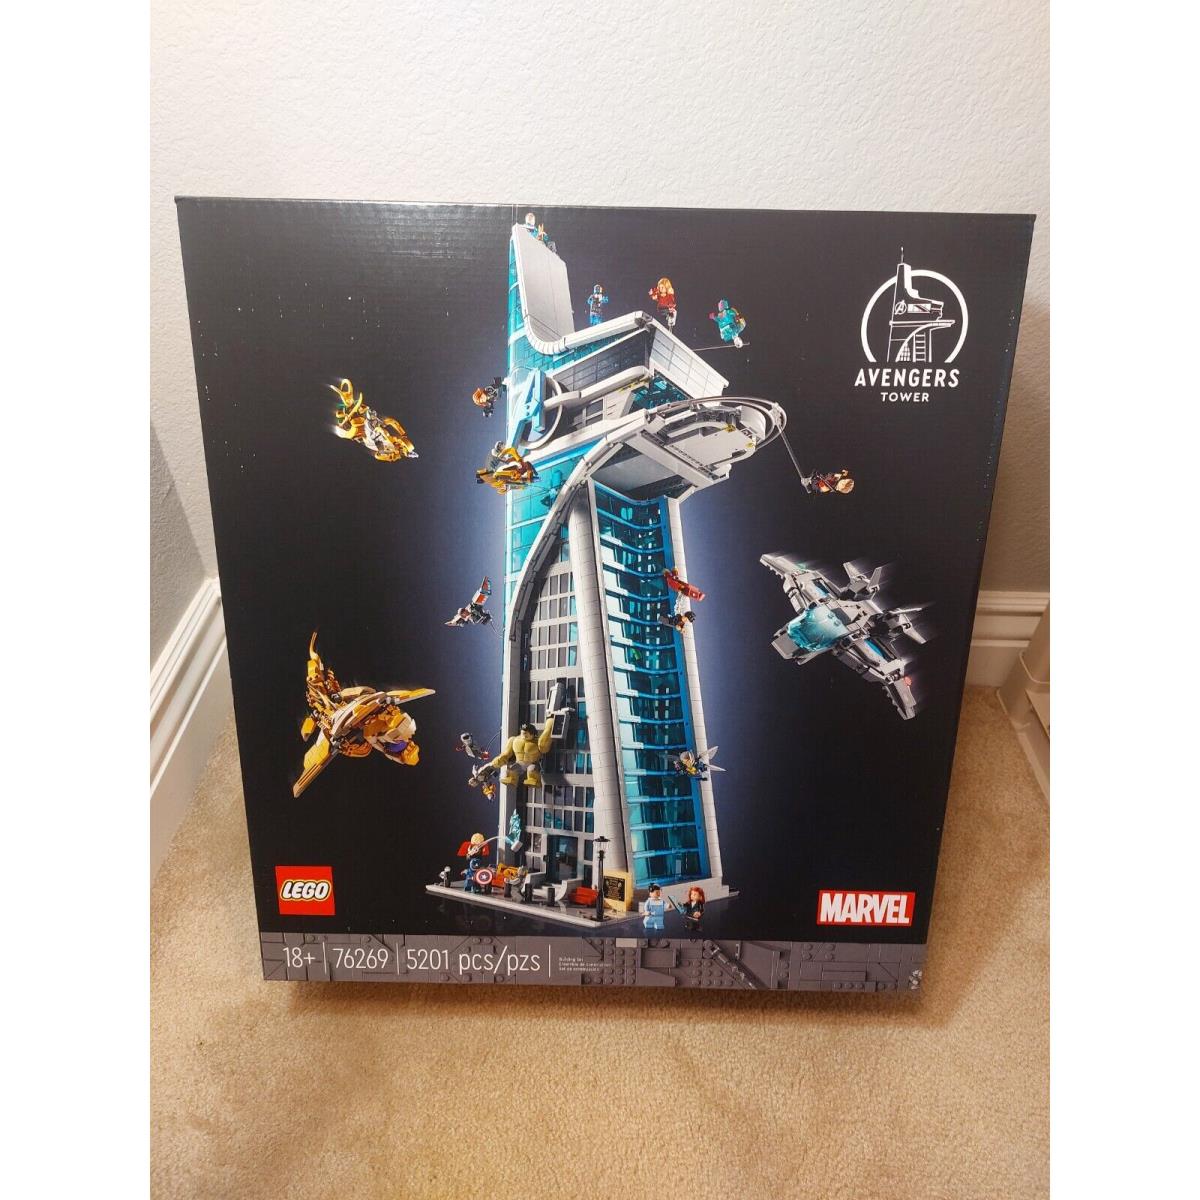 Lego Marvel Avengers Tower Set 76269